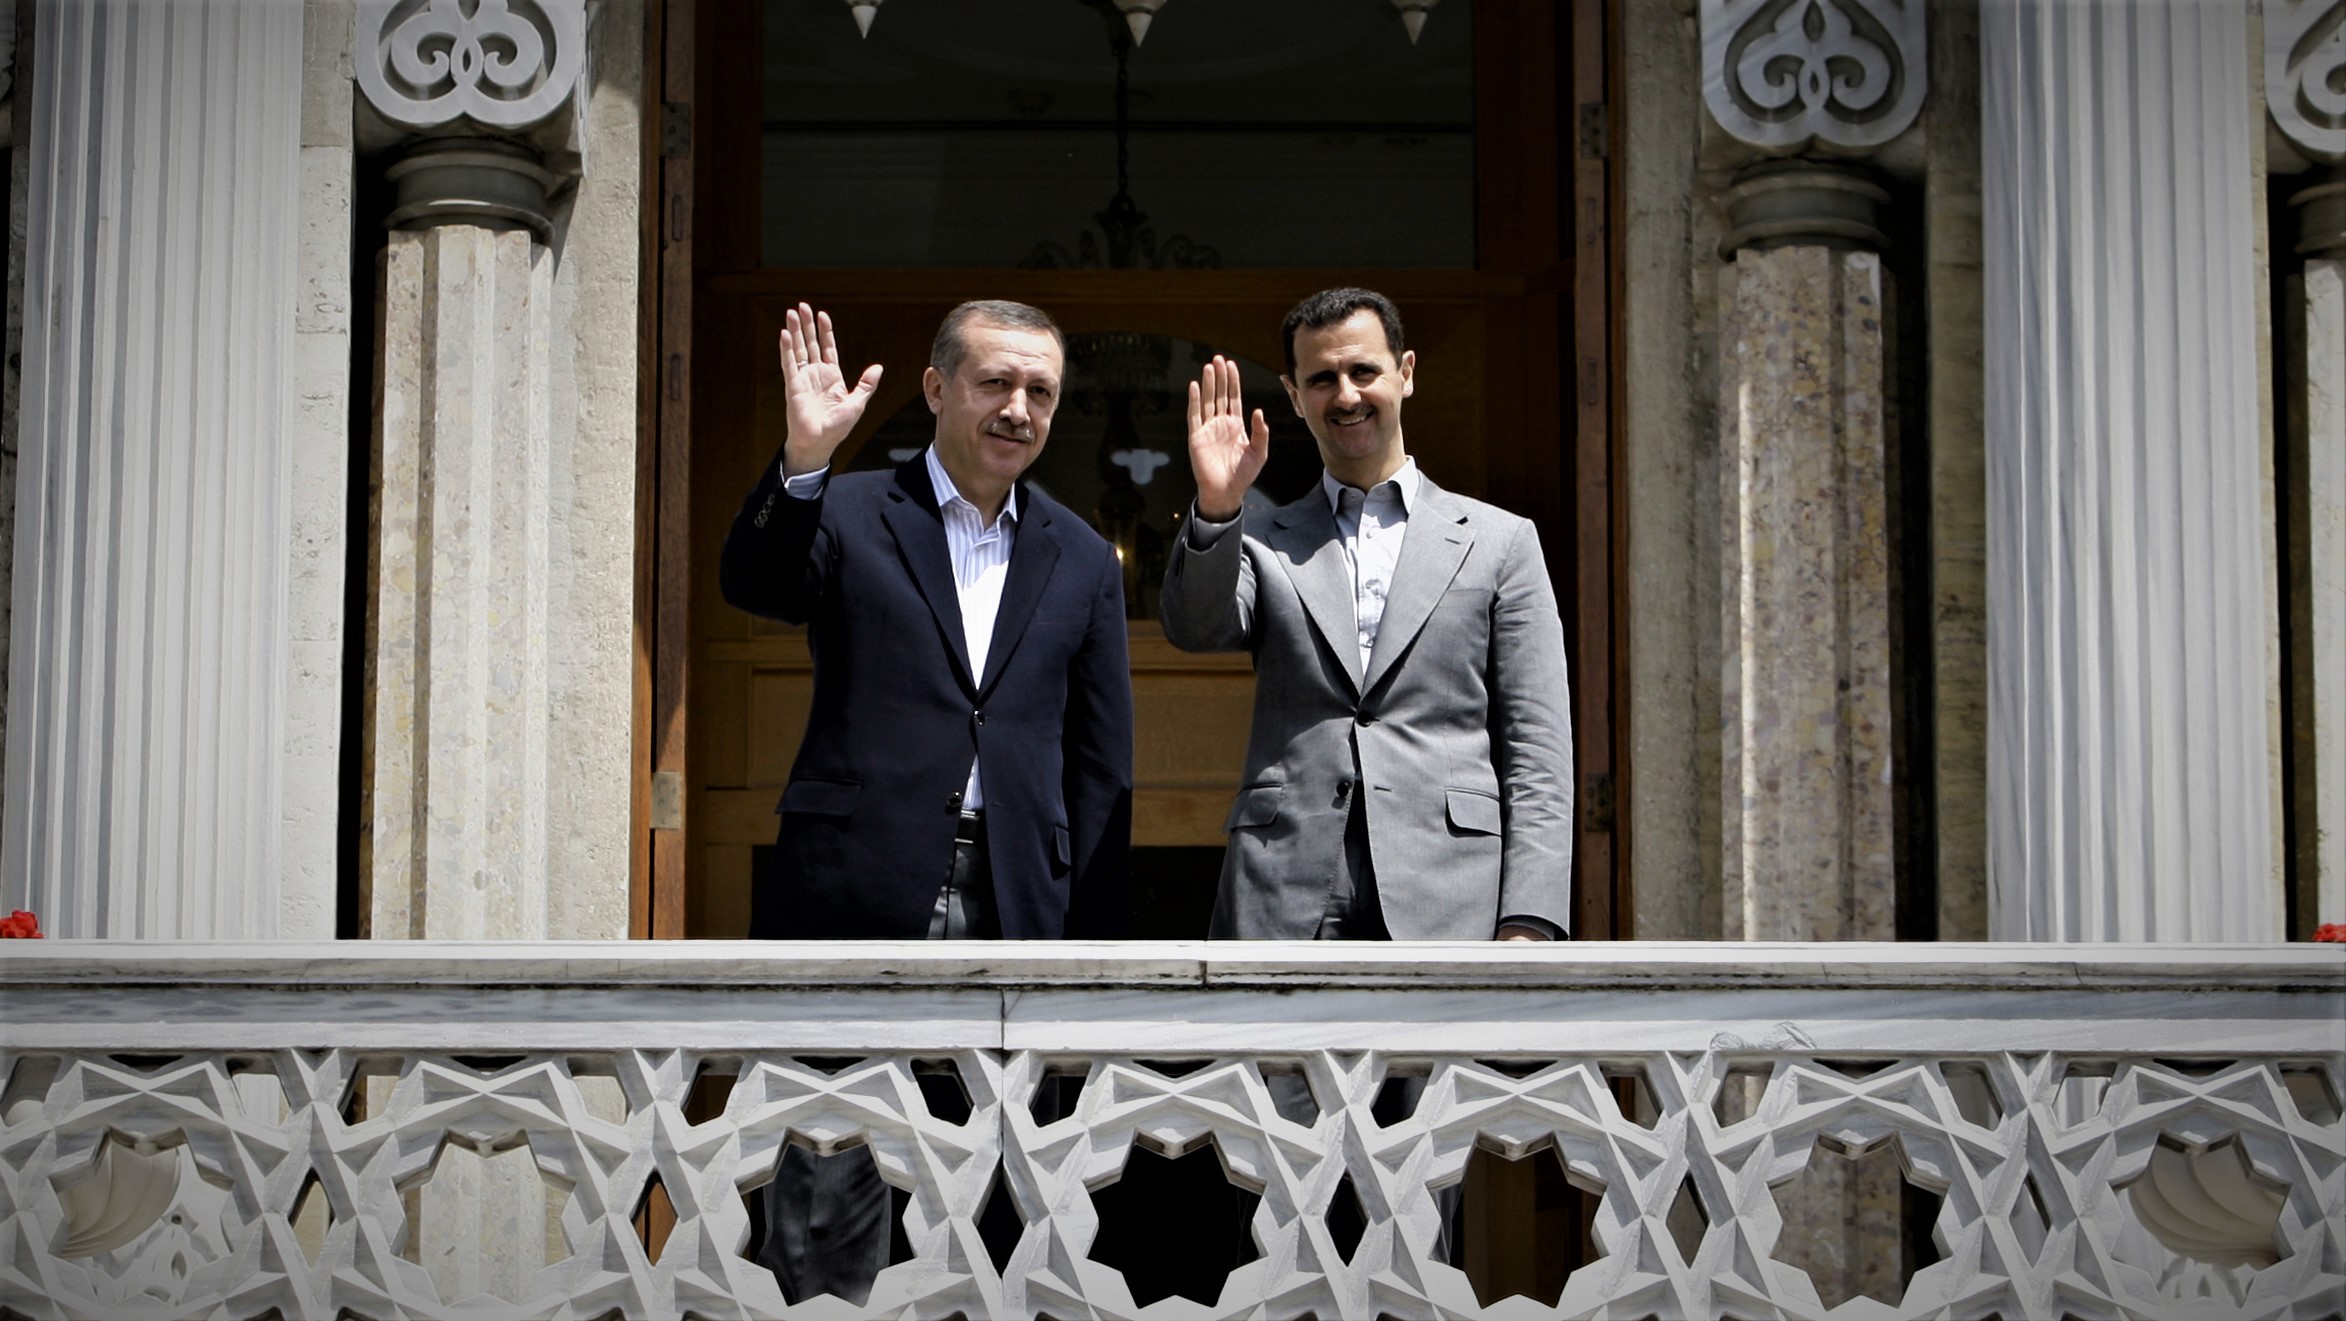 Recep Tayyip Erdogan and Bashar al-Assad